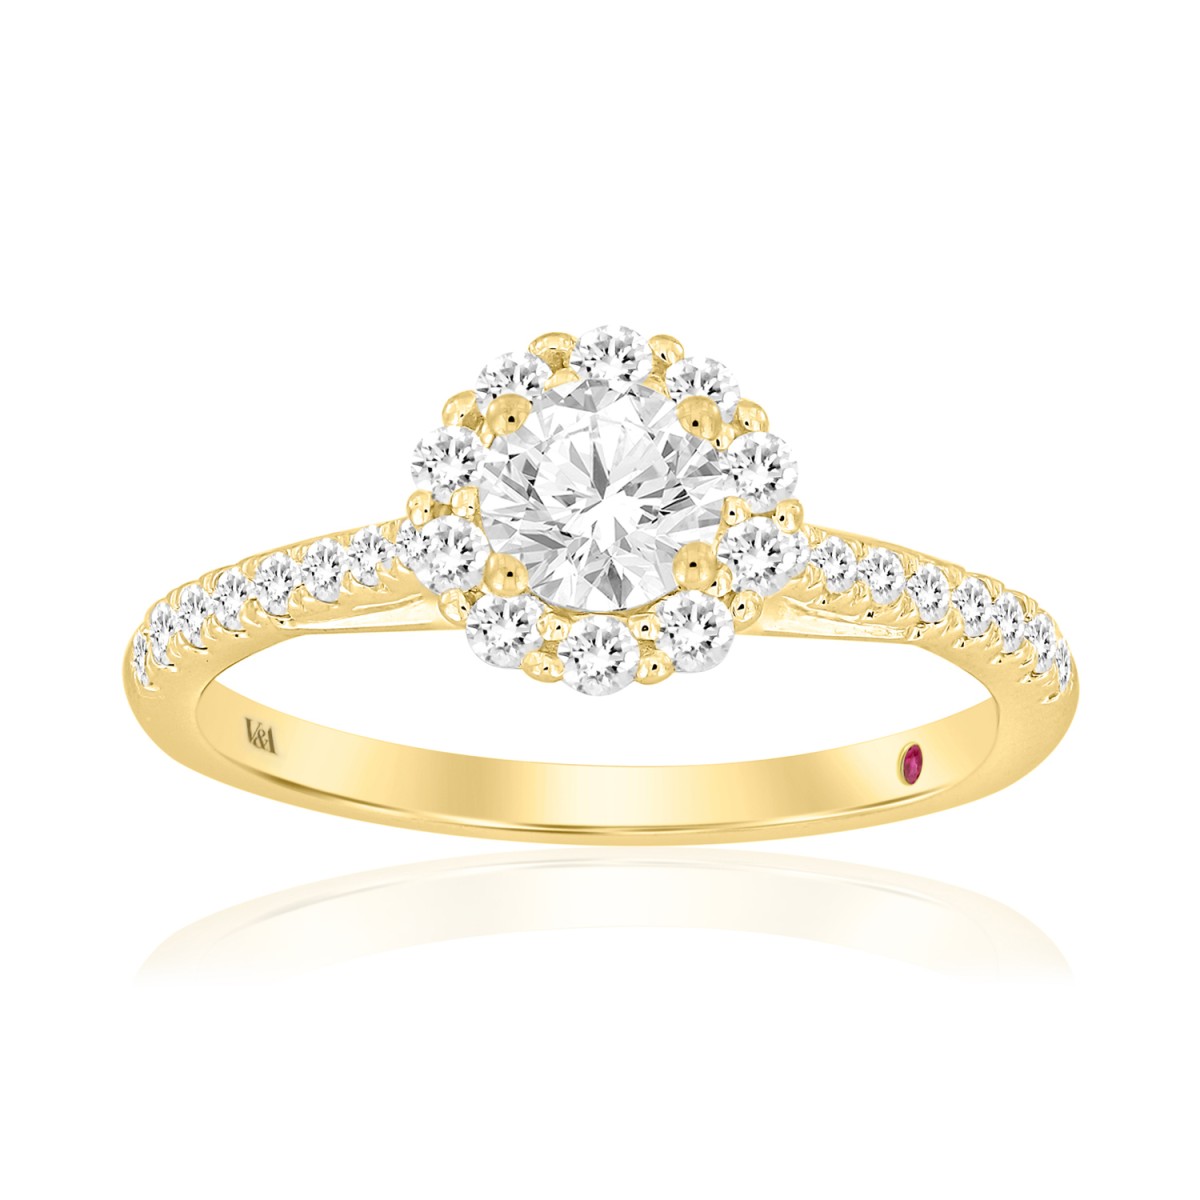 14K YELLOW GOLD 3/4CT ROUND DIAMOND LADIES RING ( CENTER STONE ROUND DIAMOND 0.33CT)